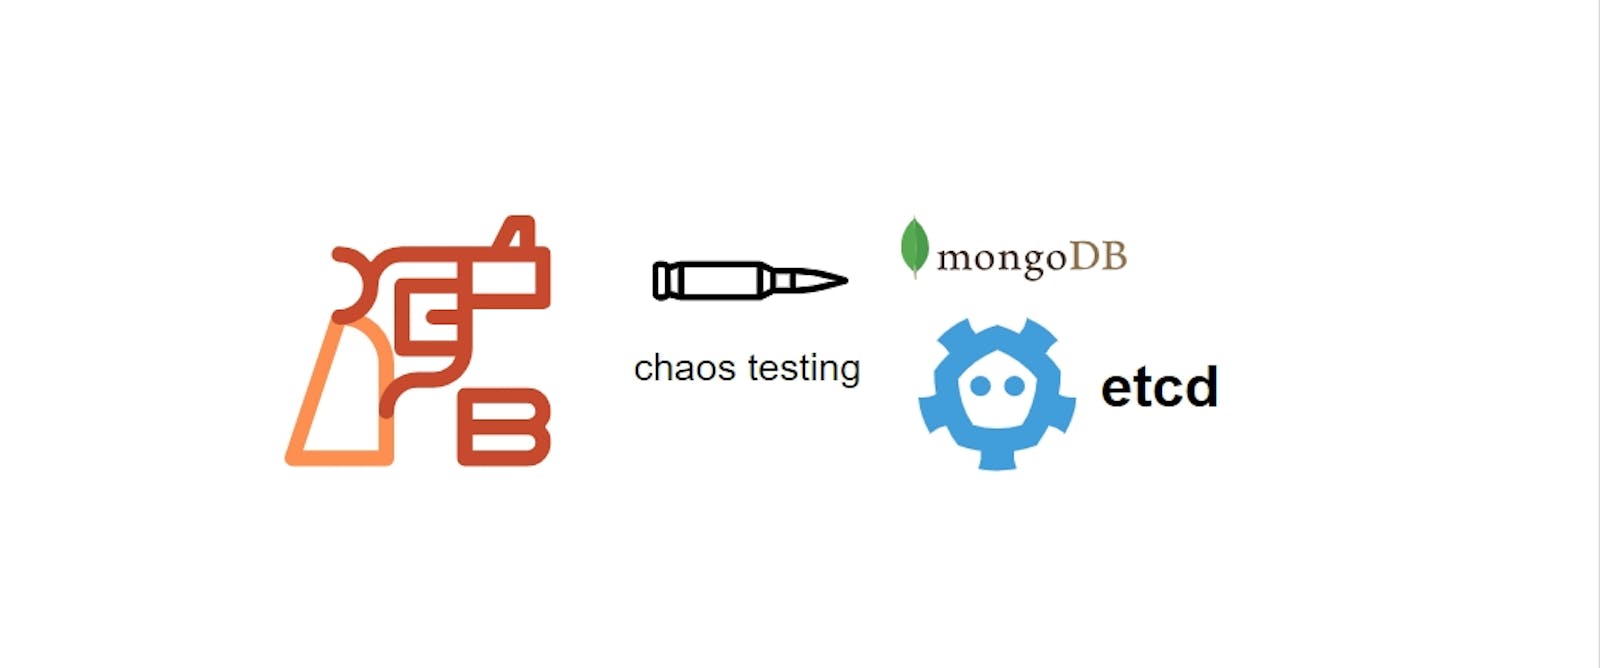 Chaos (fault) testing method for etcd and MongoDB